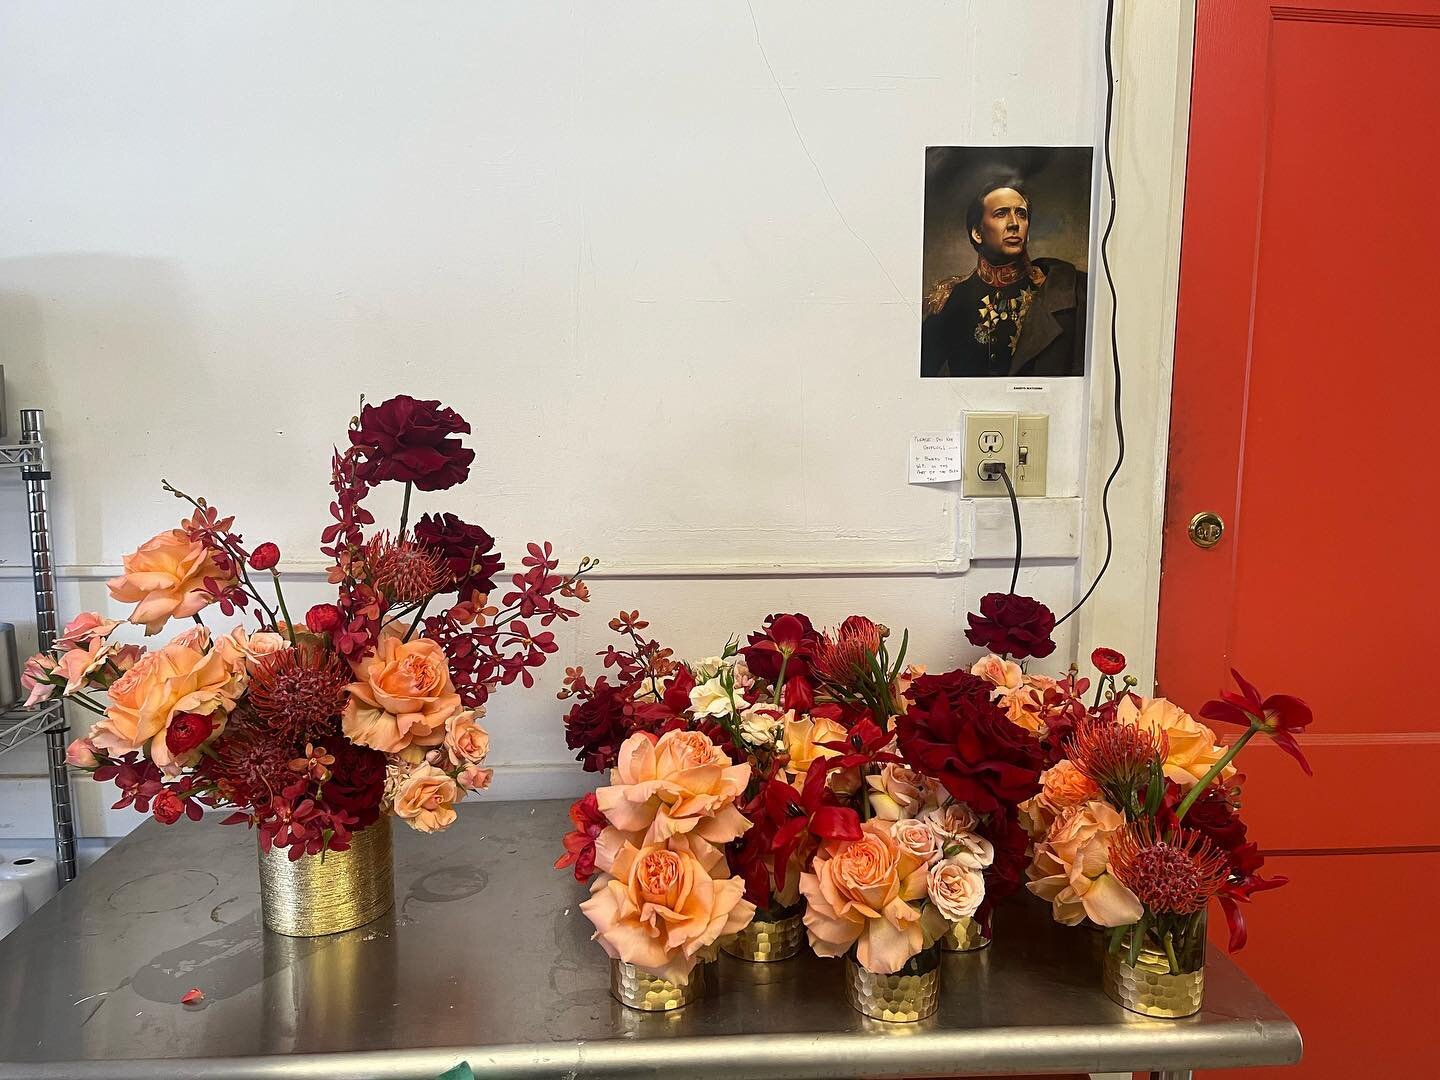 studio ******scenes******

#studiovibes #studio #niccage #fineartflowers #floraldesign #denverflorist #coloradoflorist